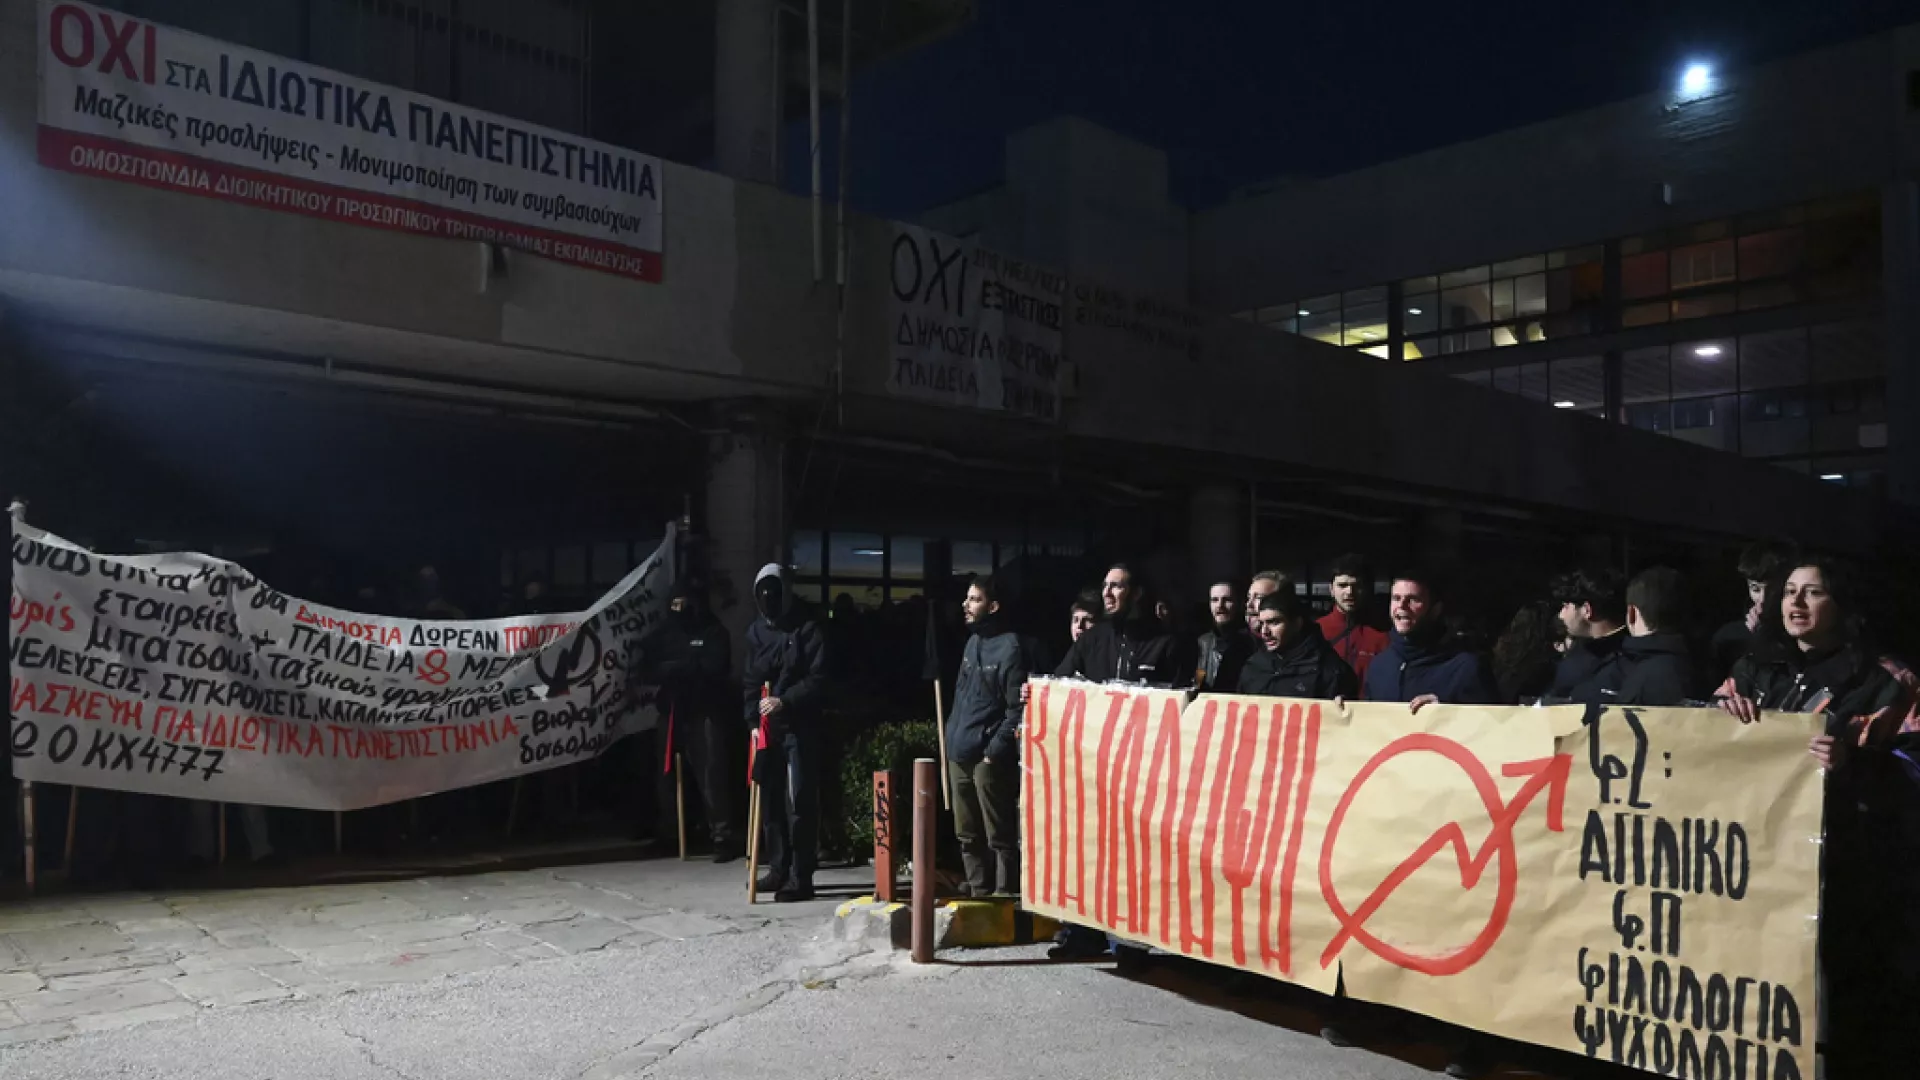 Yunanistan’da öğrenciler ‘özel üniversite yasası’nı protesto ediyor